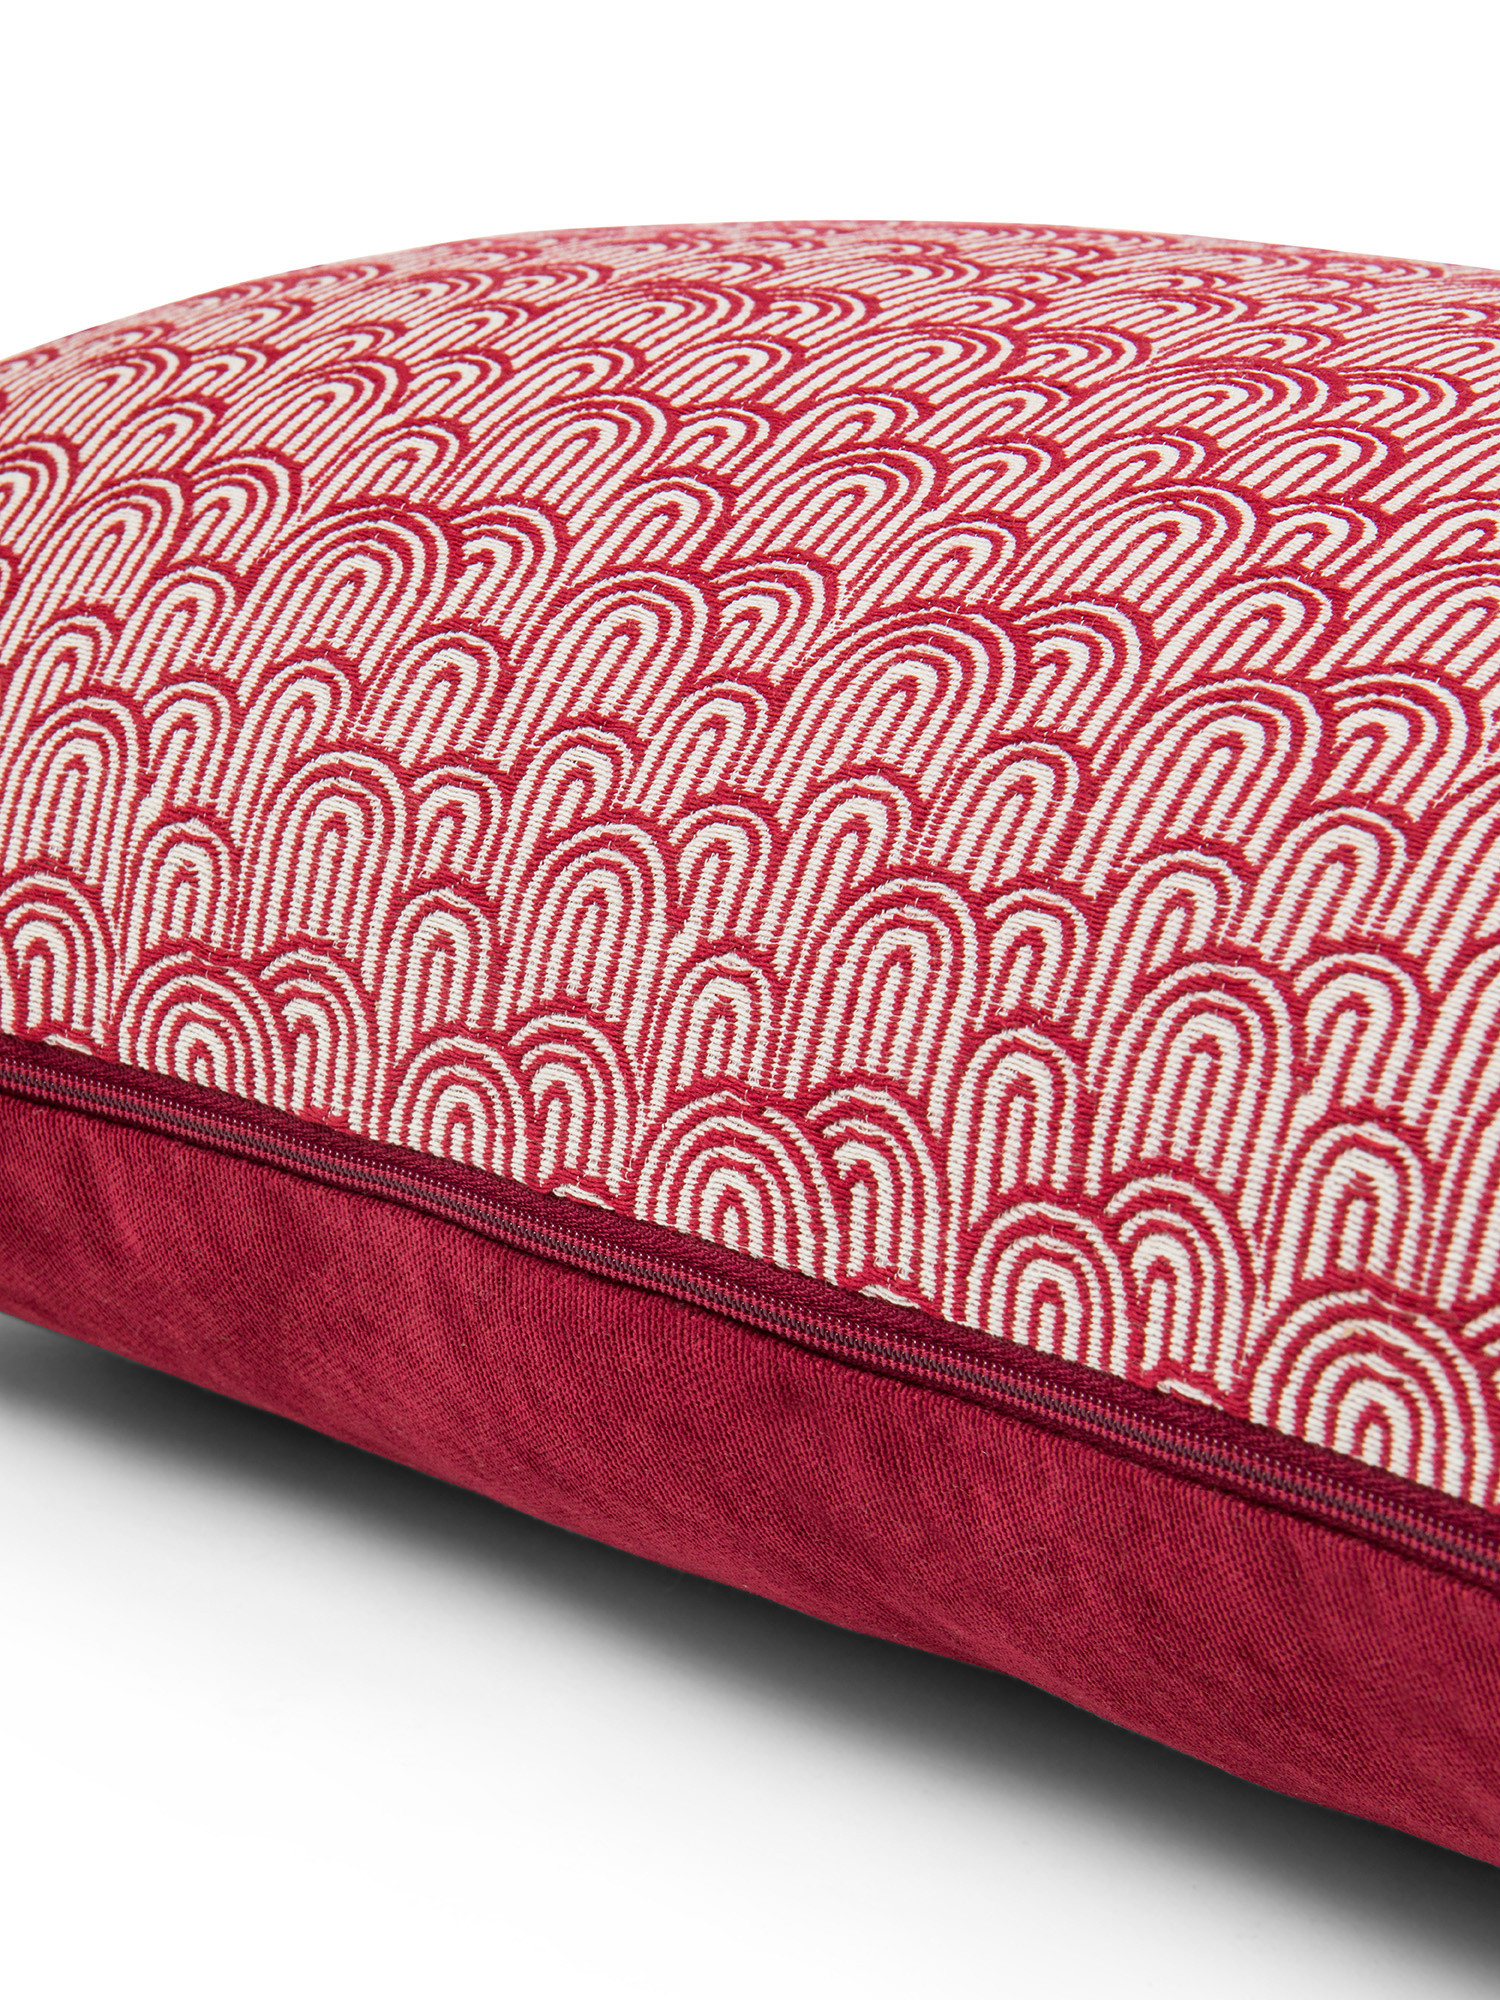 Cuscino tessuto jacquard motivo geometrico 35X55cm, Rosso, large image number 2